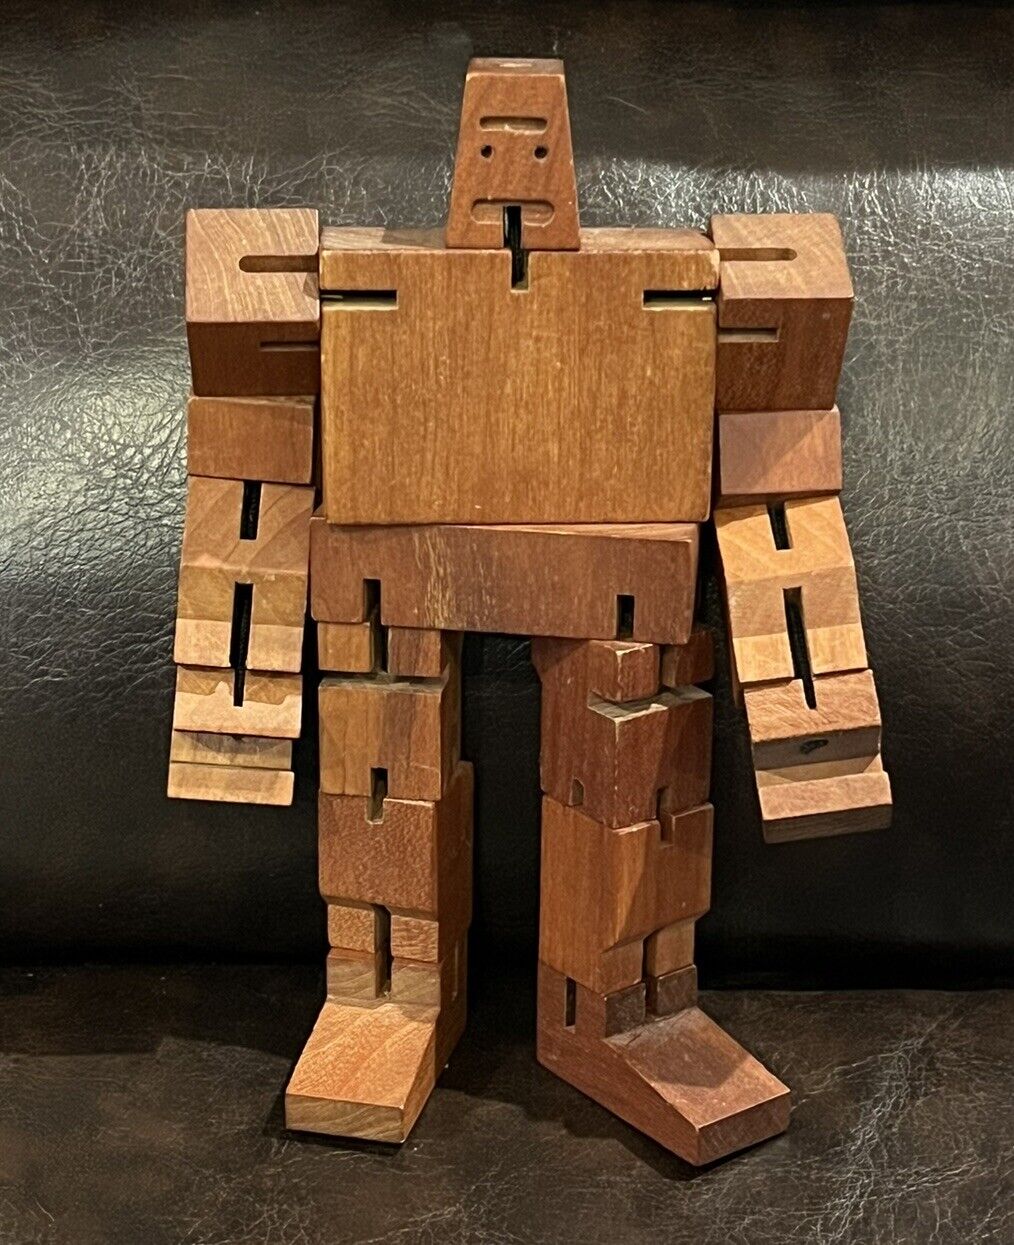 David Weeks Studio Areaware Cubebot Wooden Robot Puzzle Posable Sculpture